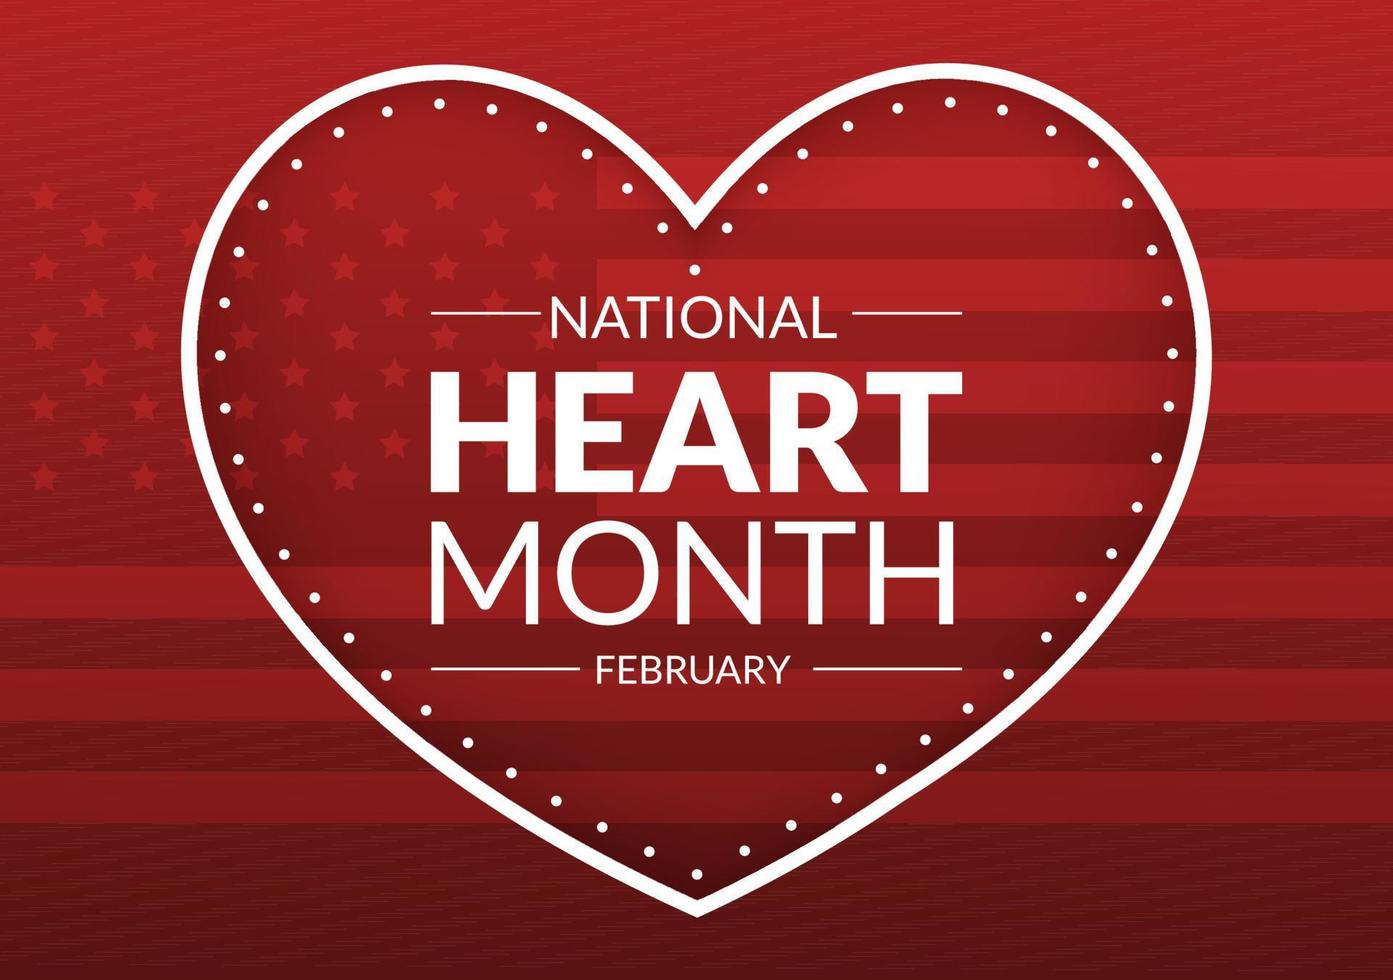 februar ist ein amerikanischer herzmonat mit einem puls für die gesundheit und die überwindung von kardiovaskulären erkrankungen in einer handgezeichneten schablonenillustration der flachen karikatur vektor